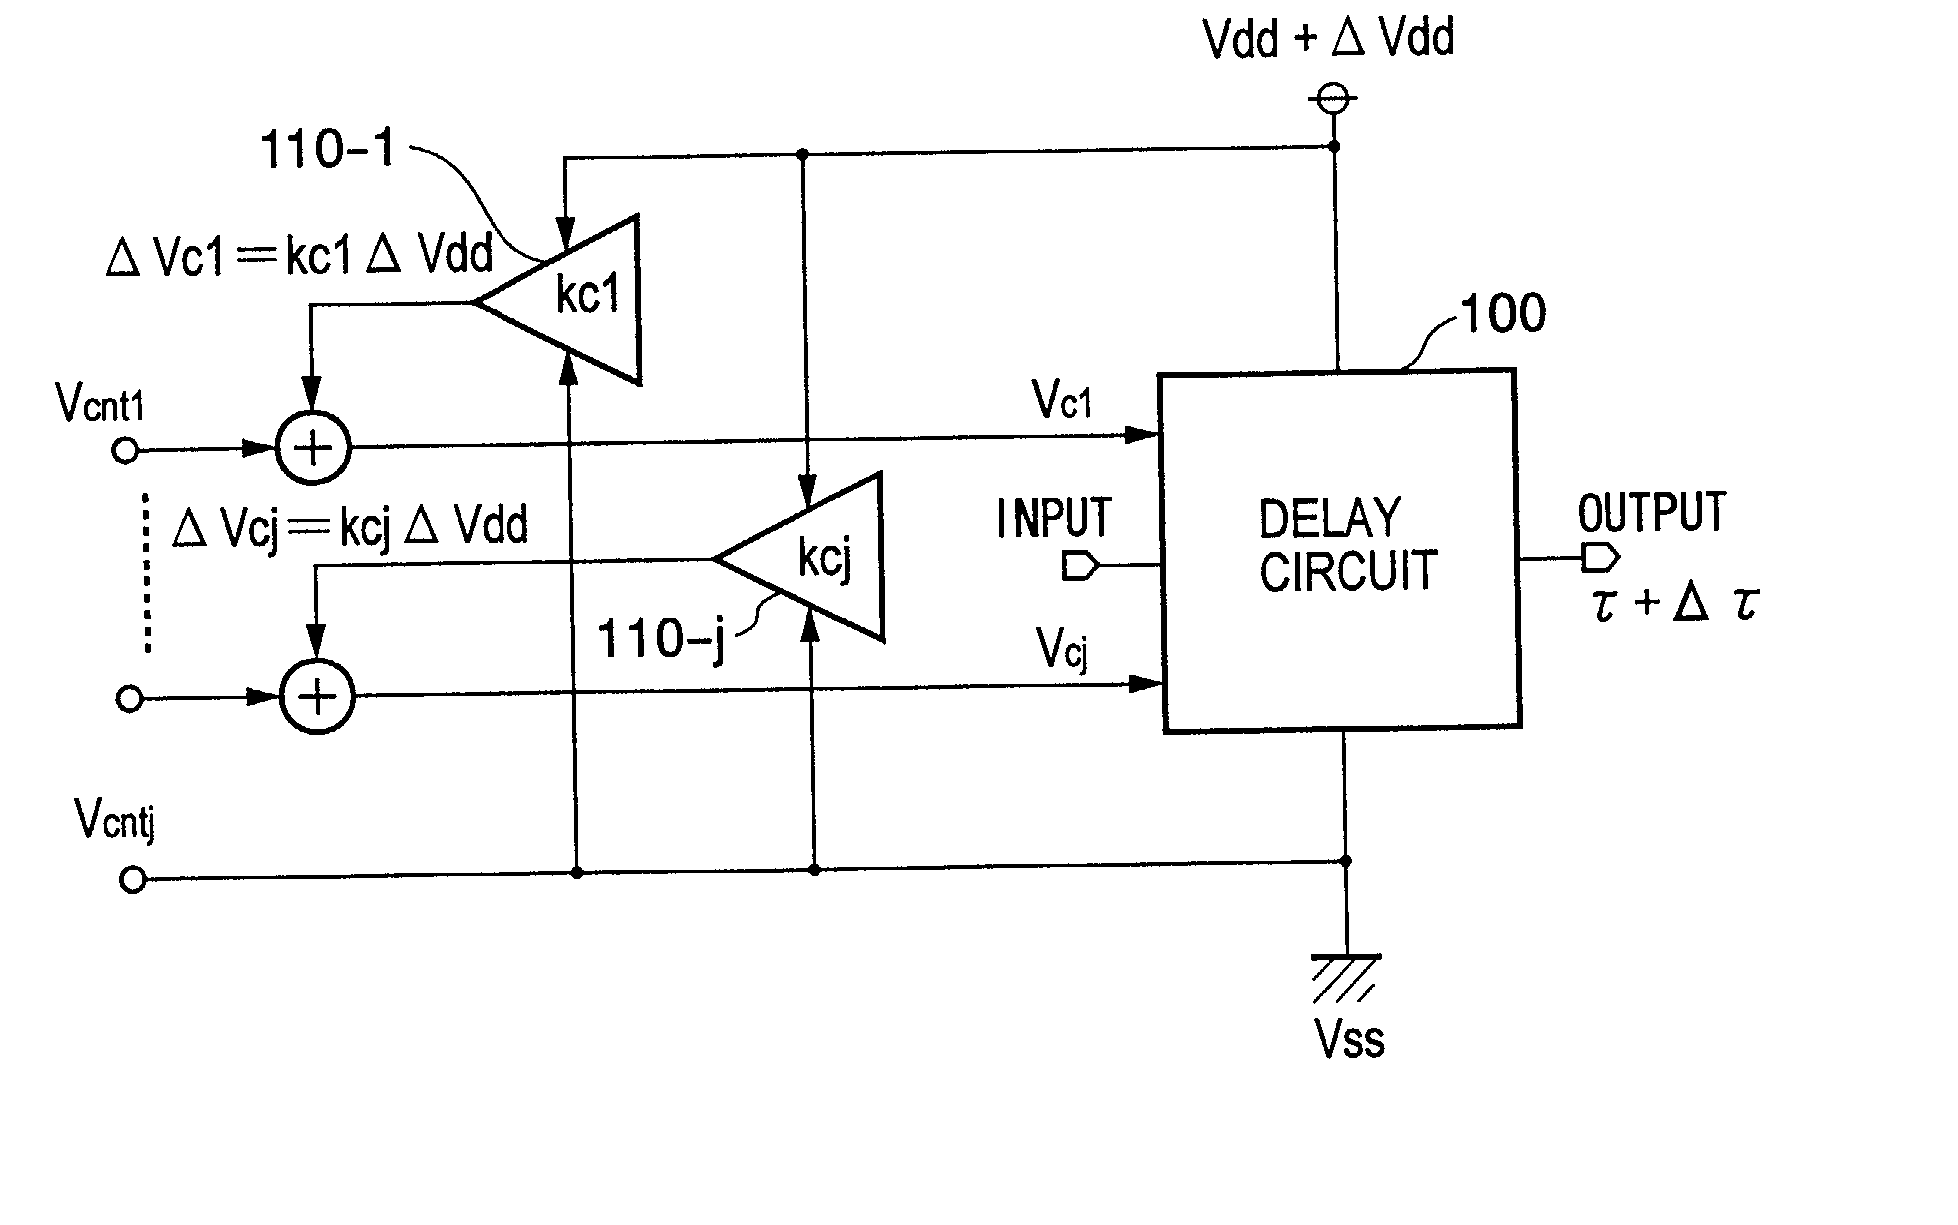 Delay circuit, voltage-controlled delay circuit, voltage-controlled oscillation circuit, delay adjustment circuit, DLL circuit, and PLL circuit